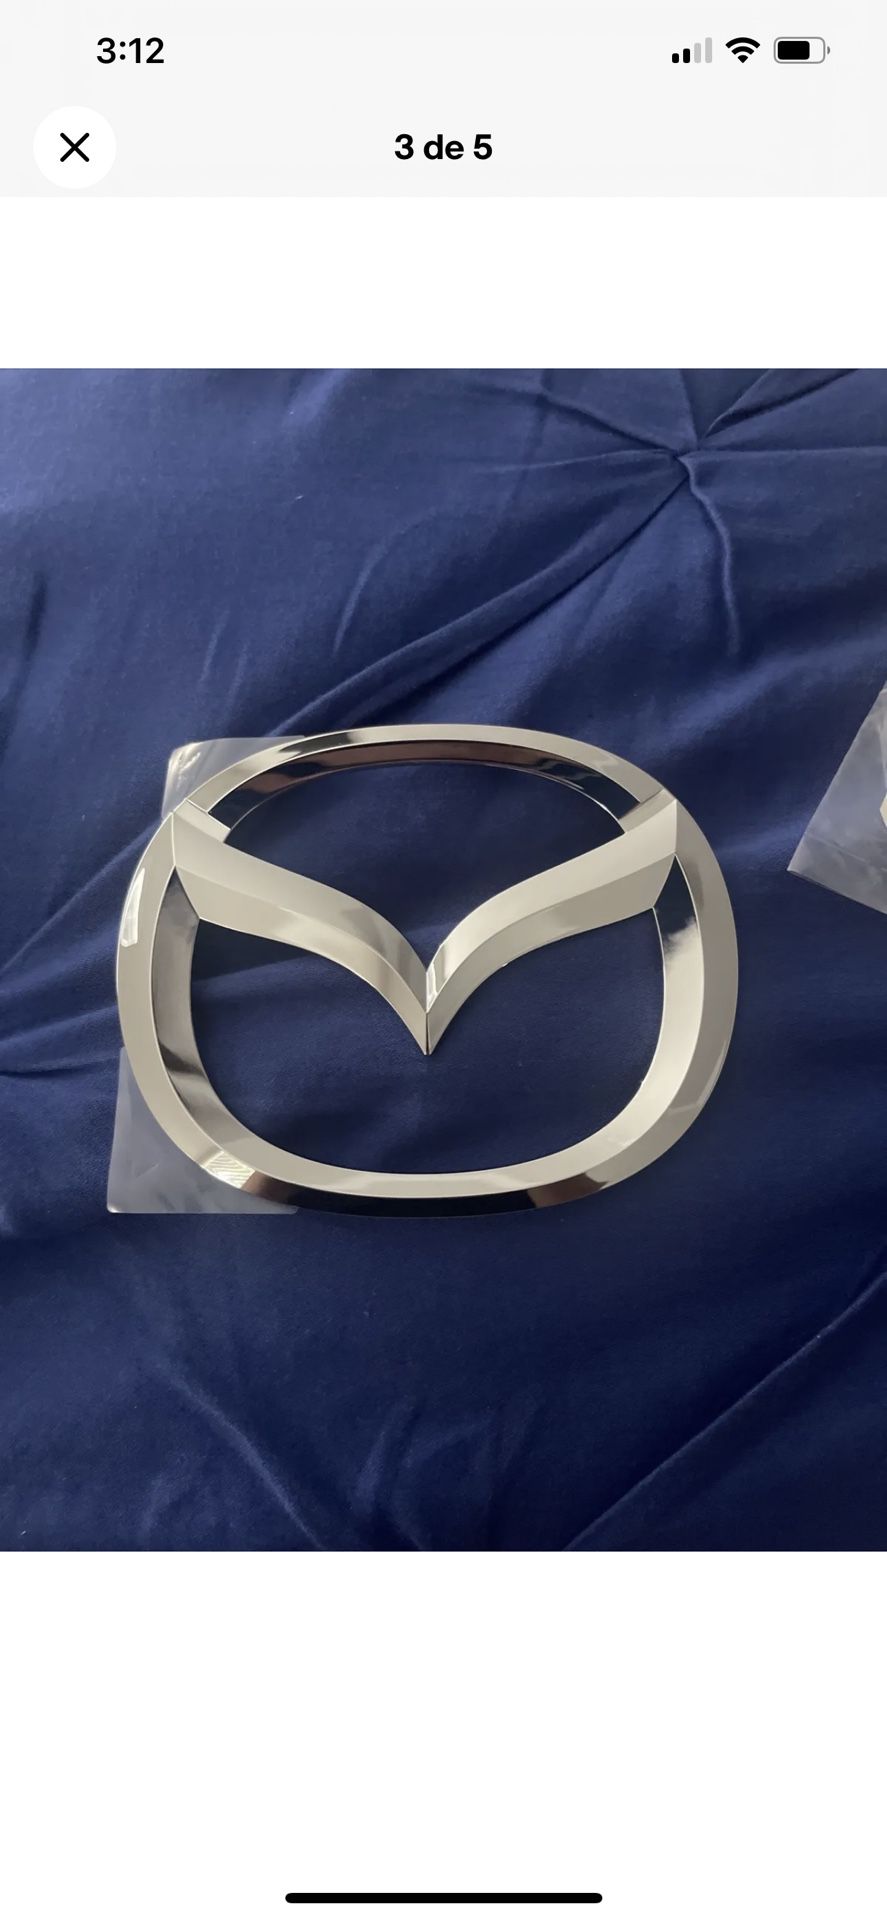 2014 2015 2016 2017 Mazda 6 Trunk Deck Lid Emblem Badge GHK1-51730 OEM